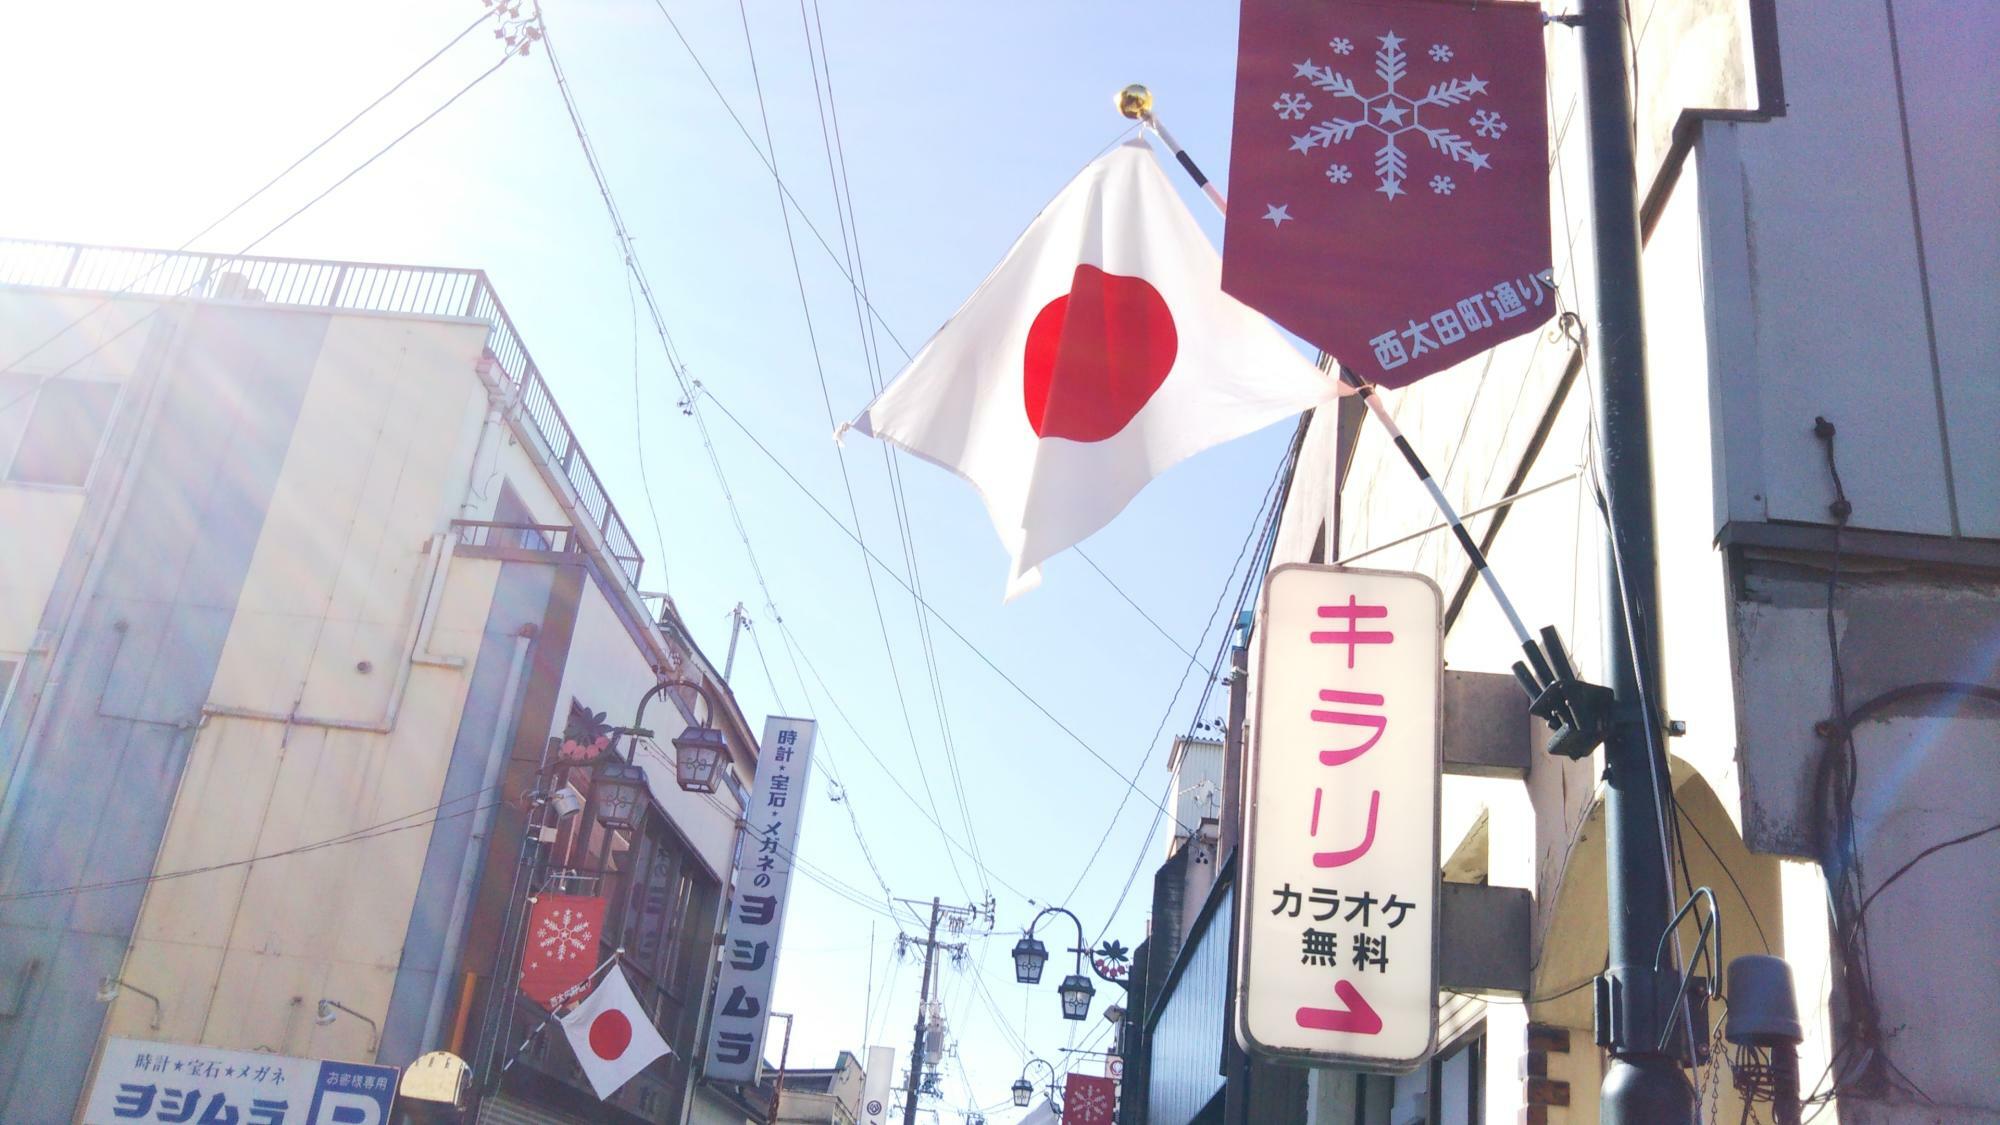 中津川の商店街には、国旗掲揚されています